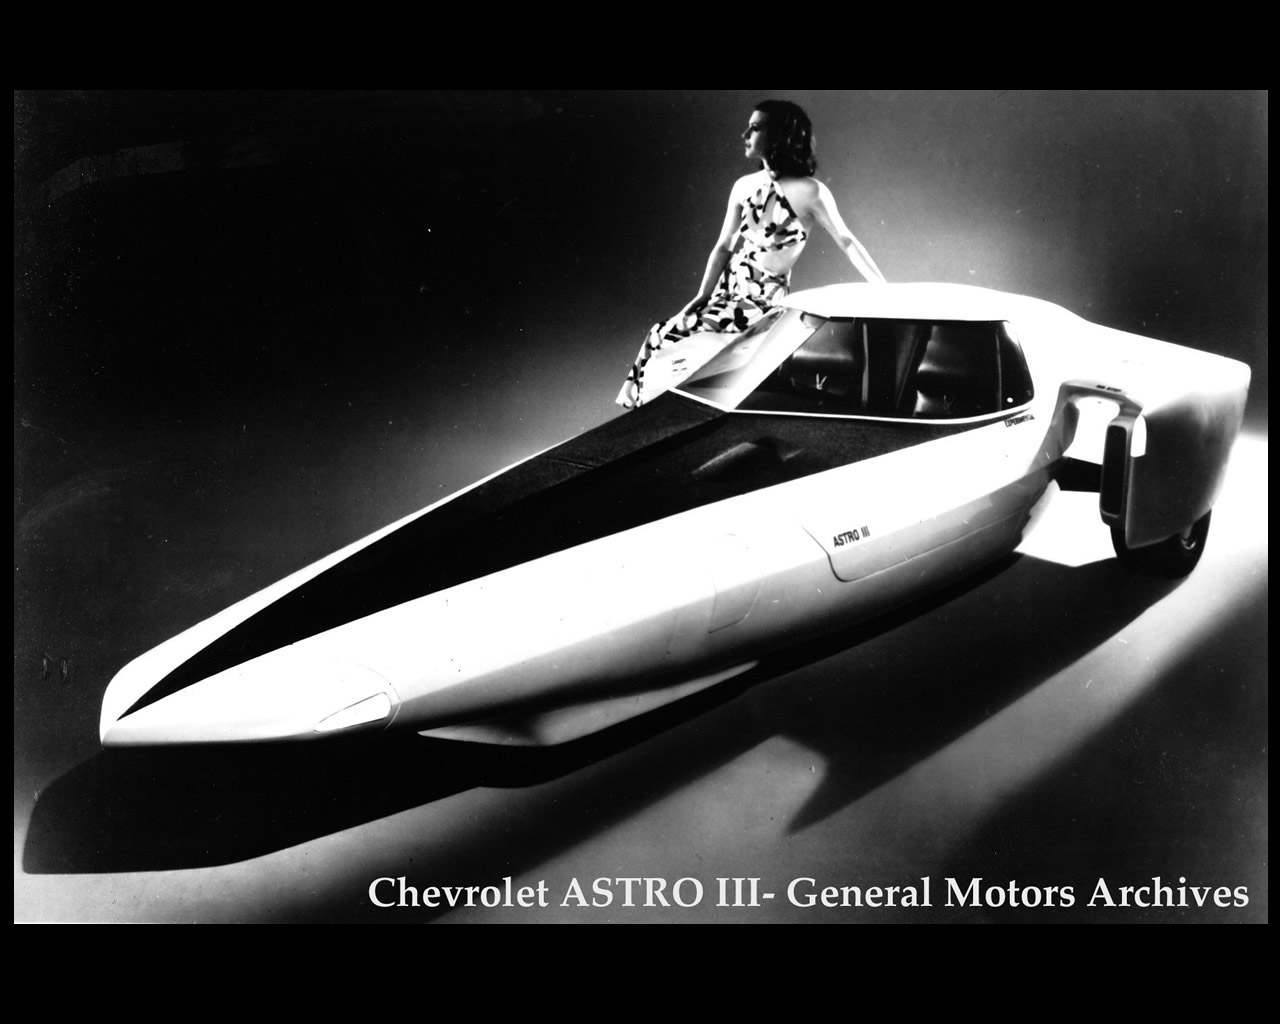 1969 Chevrolet Astro III Concept HD wallpapers, Desktop wallpaper - most viewed